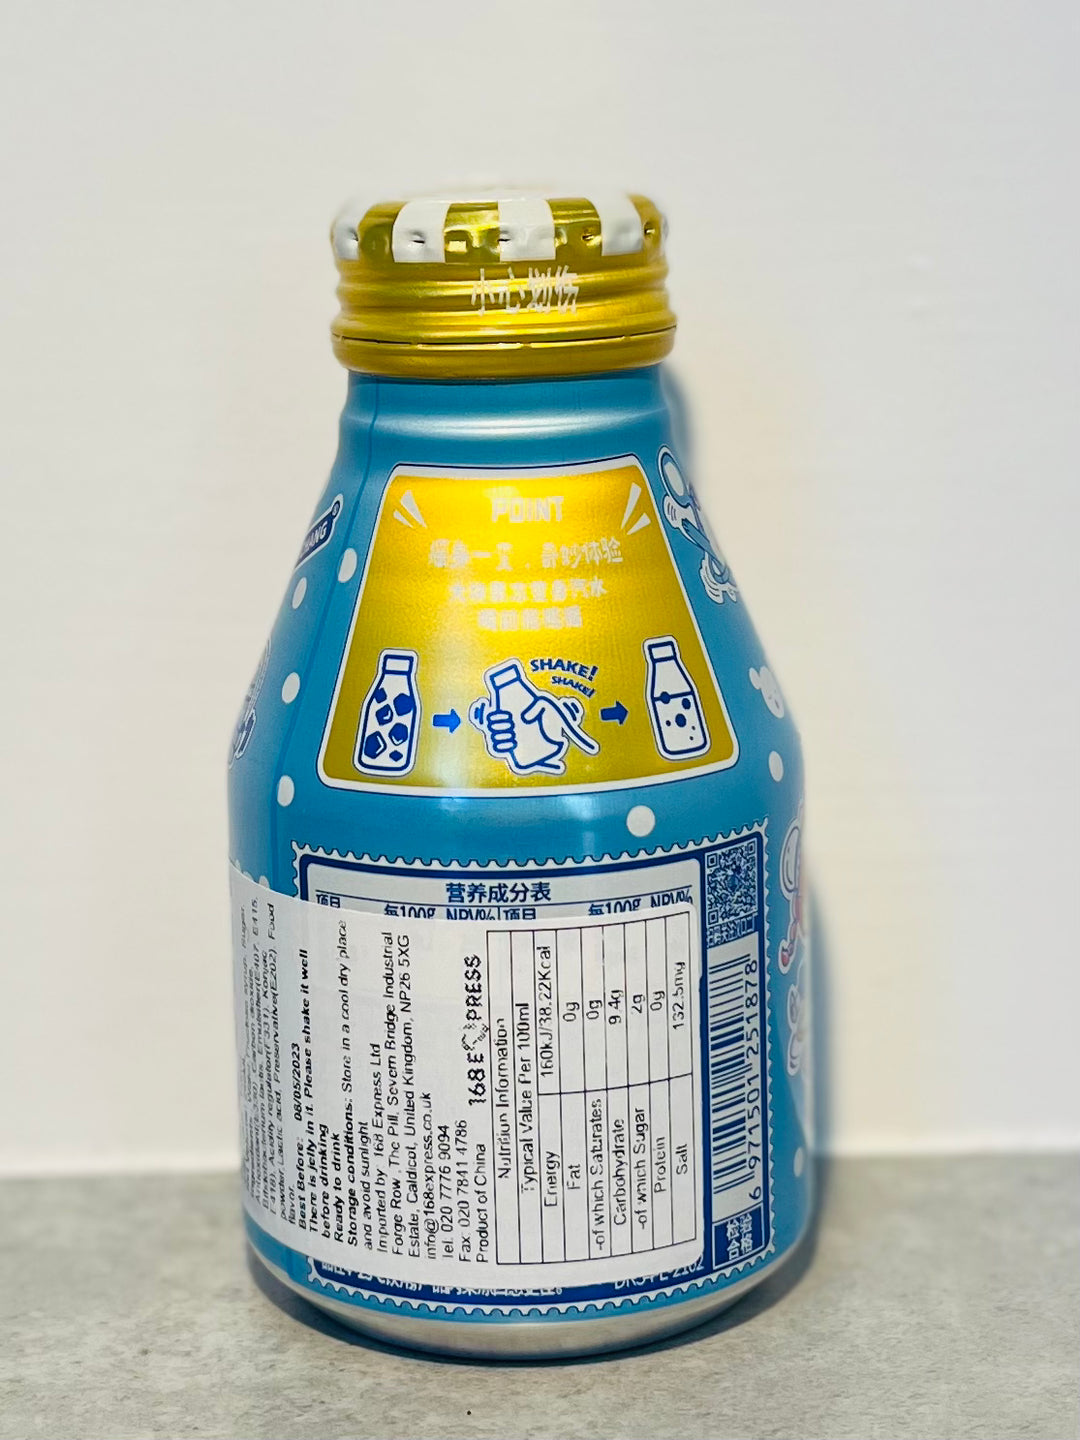 汉口二厂果冻汽水乳酸菌味248mlHKEC Juice Soda With Jelly Yogurt